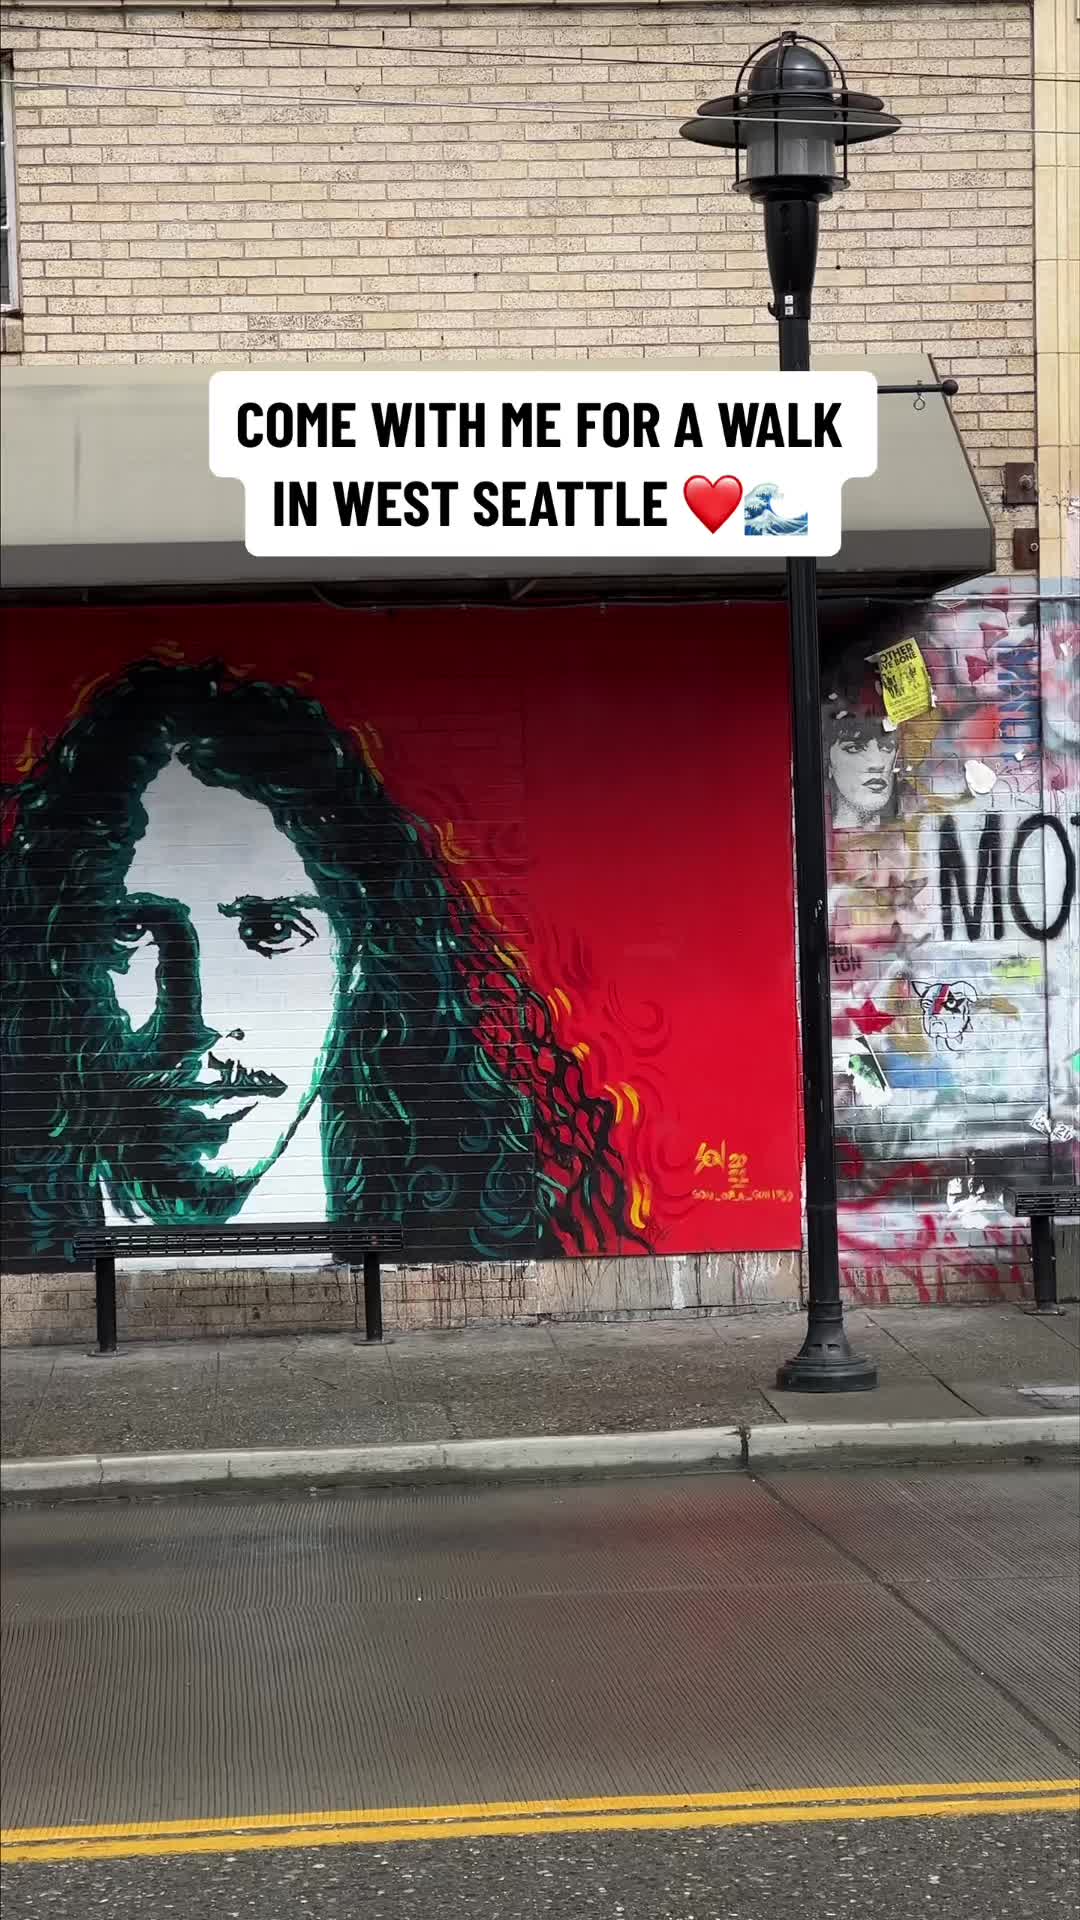 @Ann in Seattle